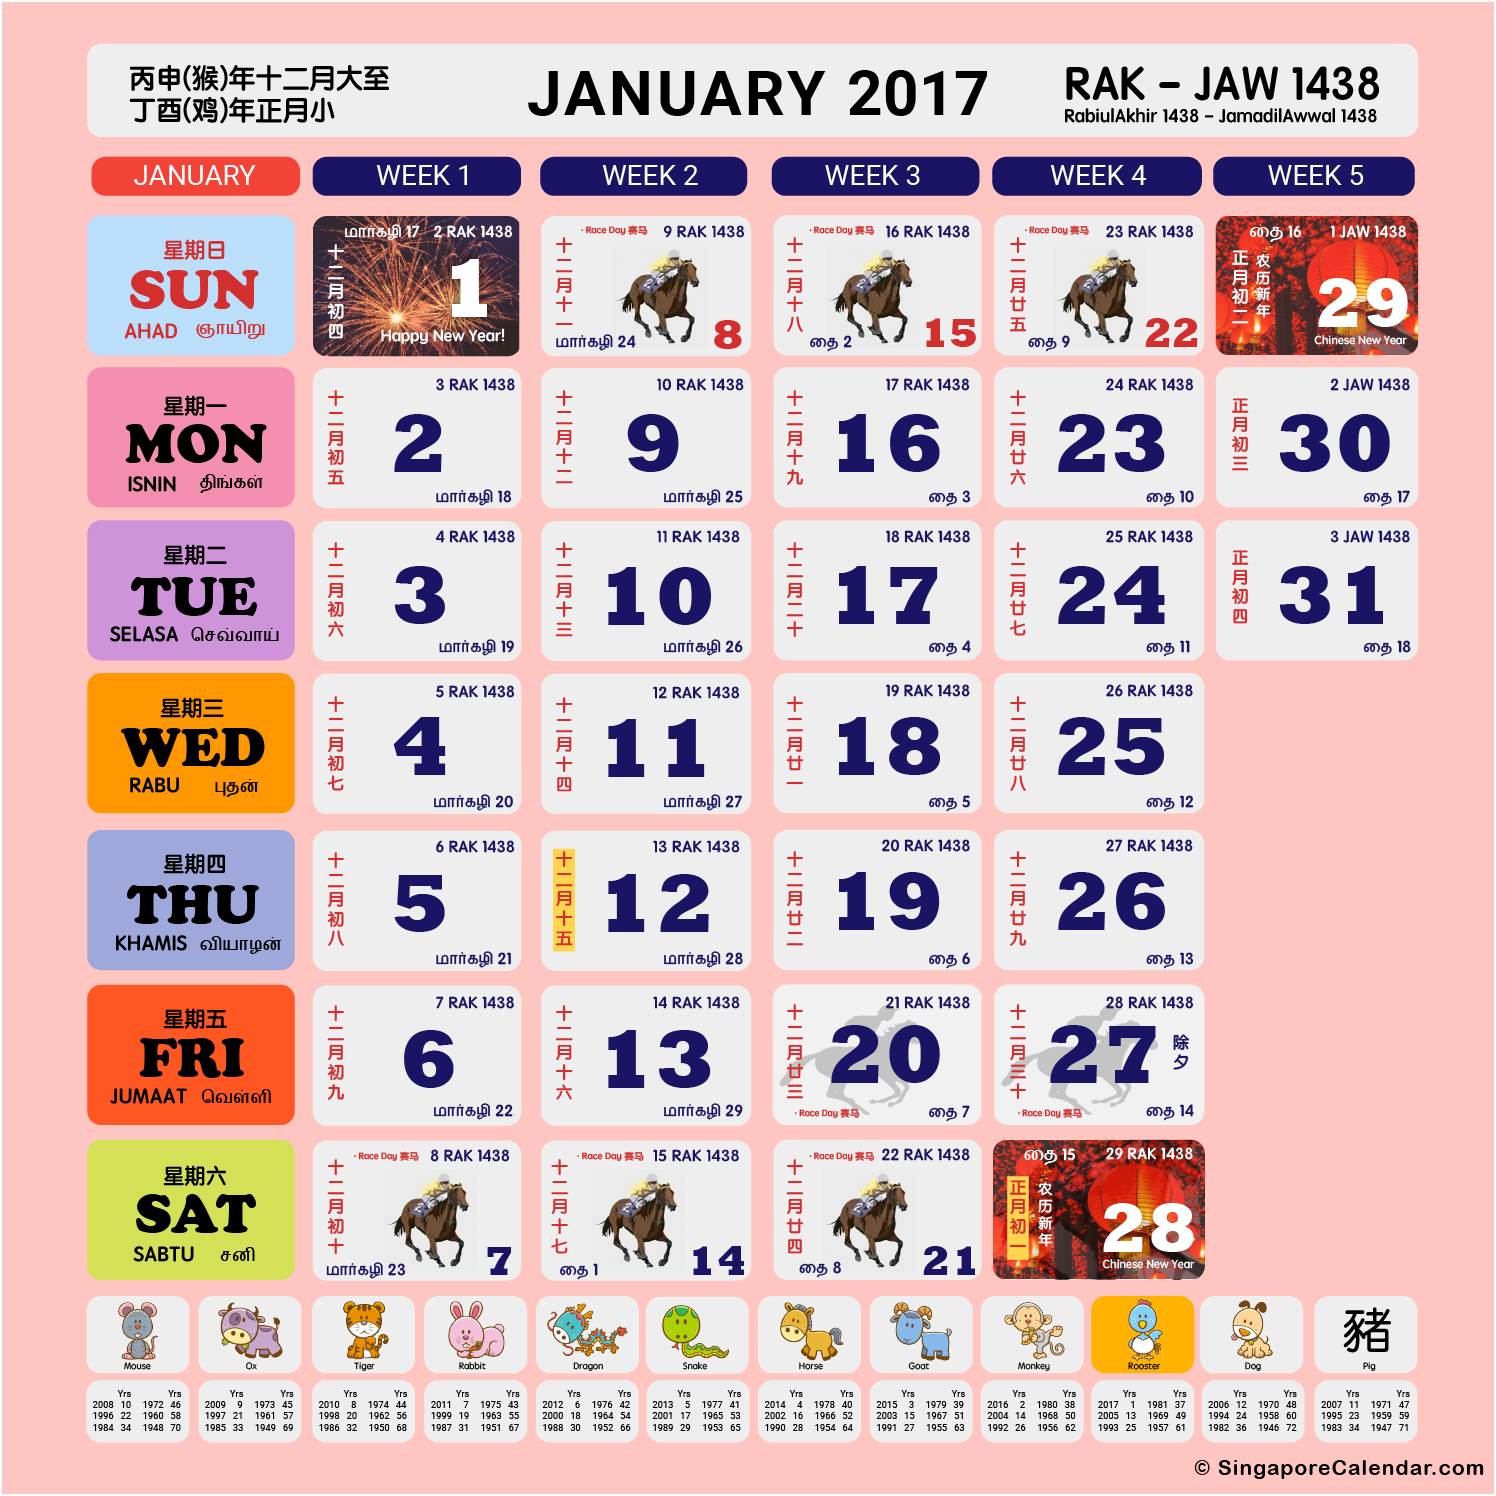 10-long-weekends-in-singapore-in-2017-bonus-planner-cheatsheet